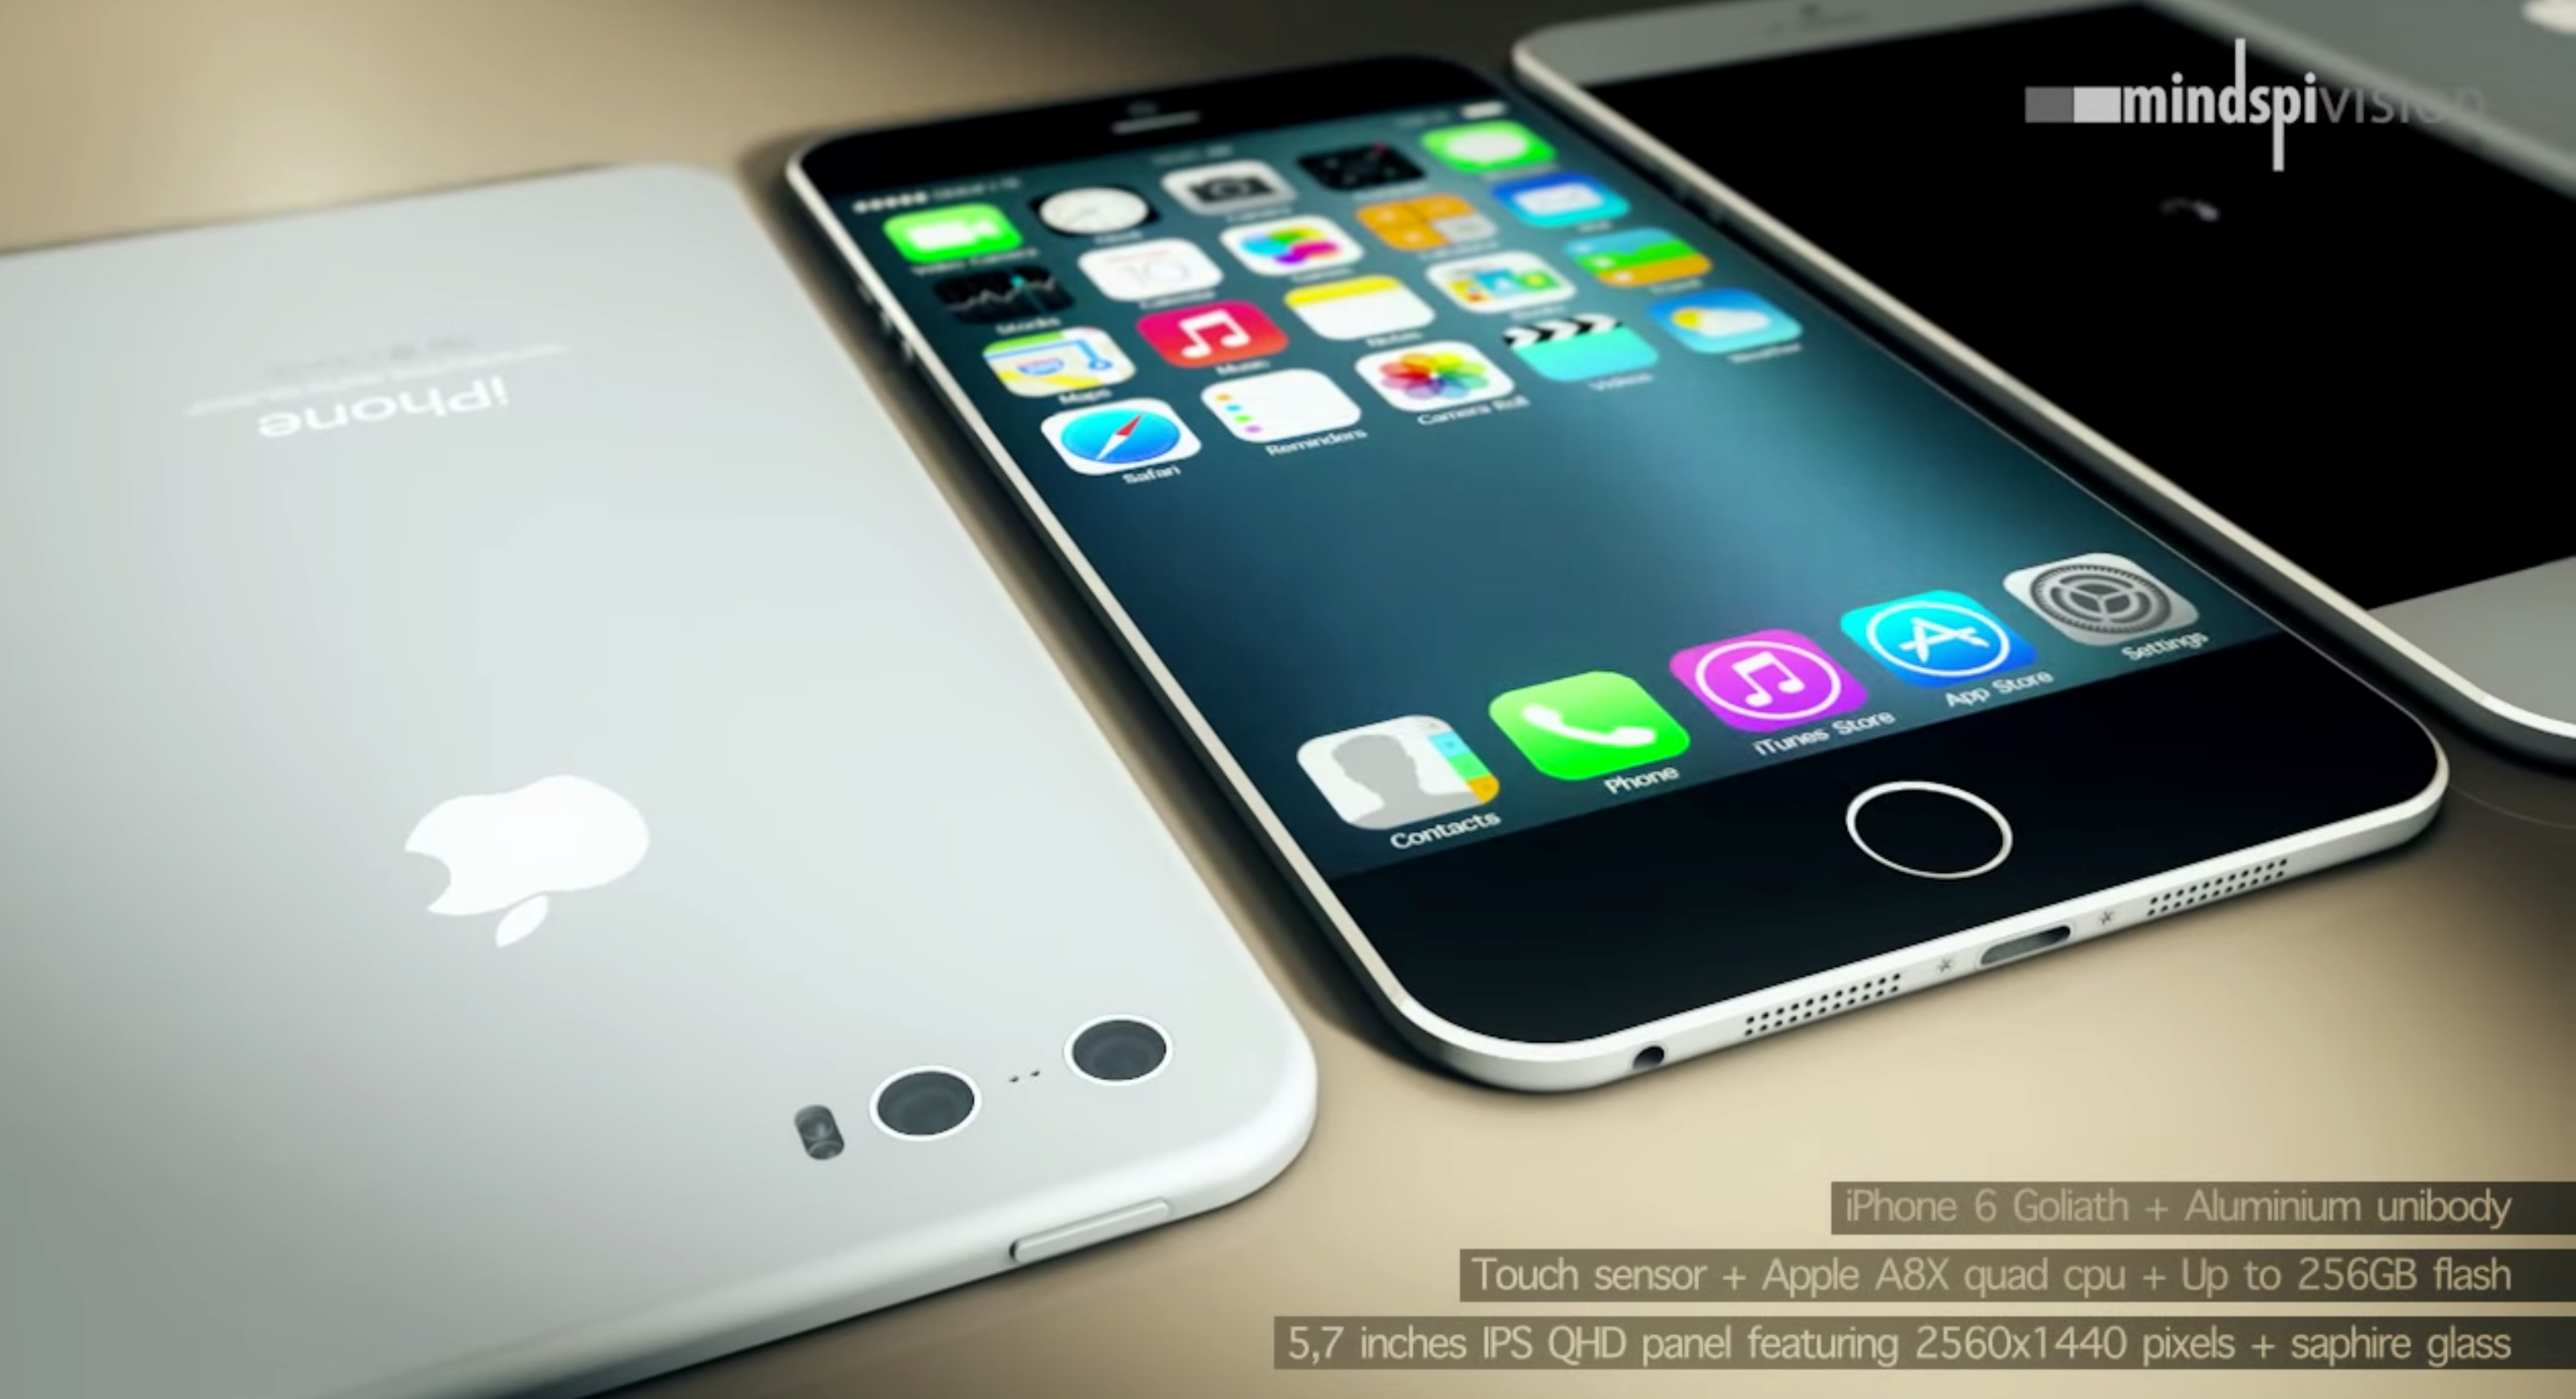 phạm hồng phước » iPhone 6 chưa ra đã có hơn 70 triệu chiếc được đặt mua